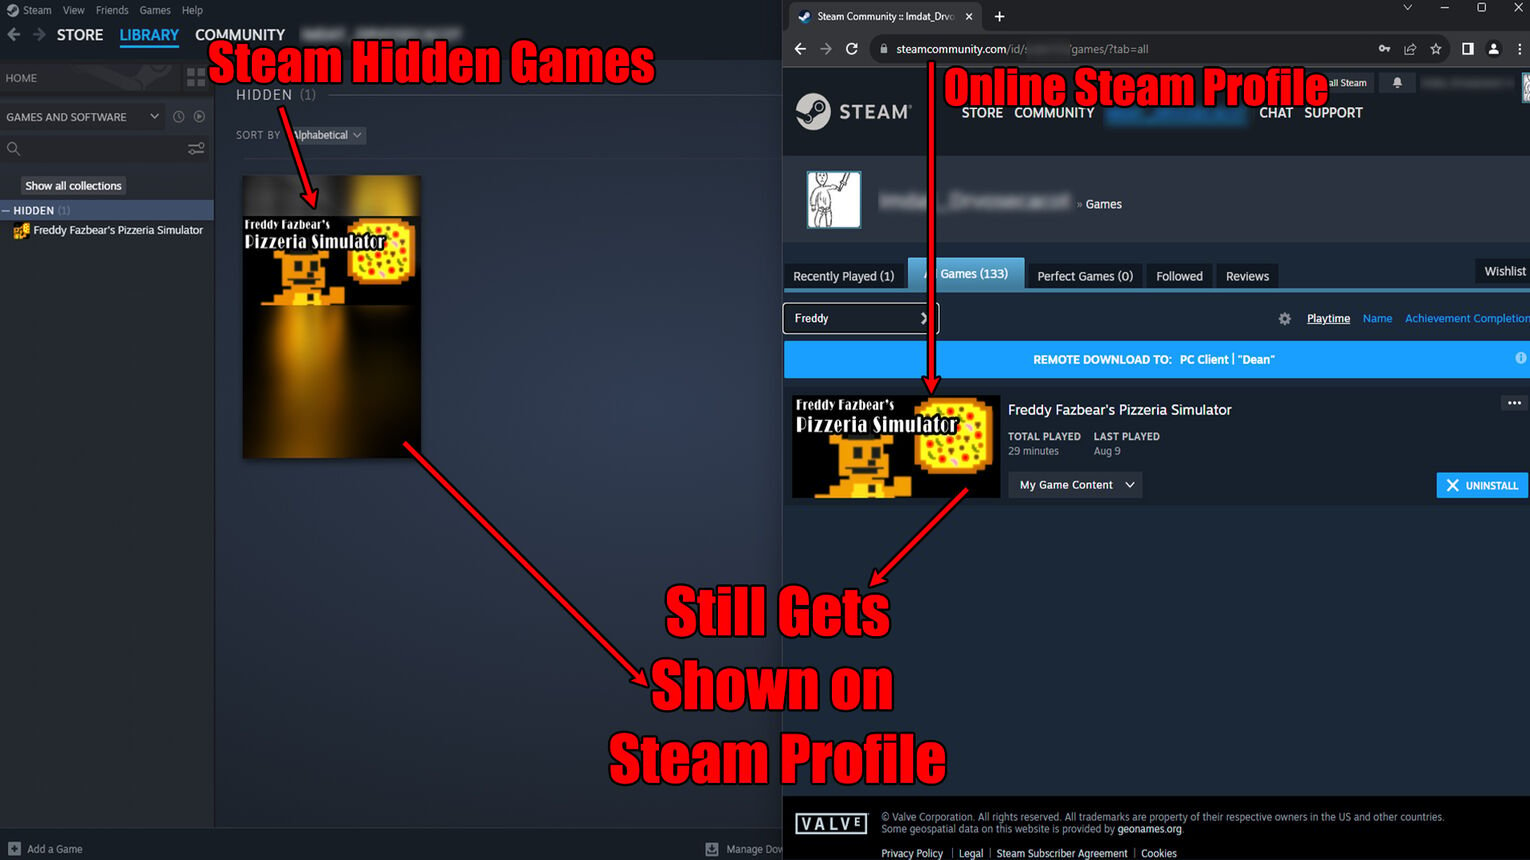 Steam Hidden Games Shown on Profile